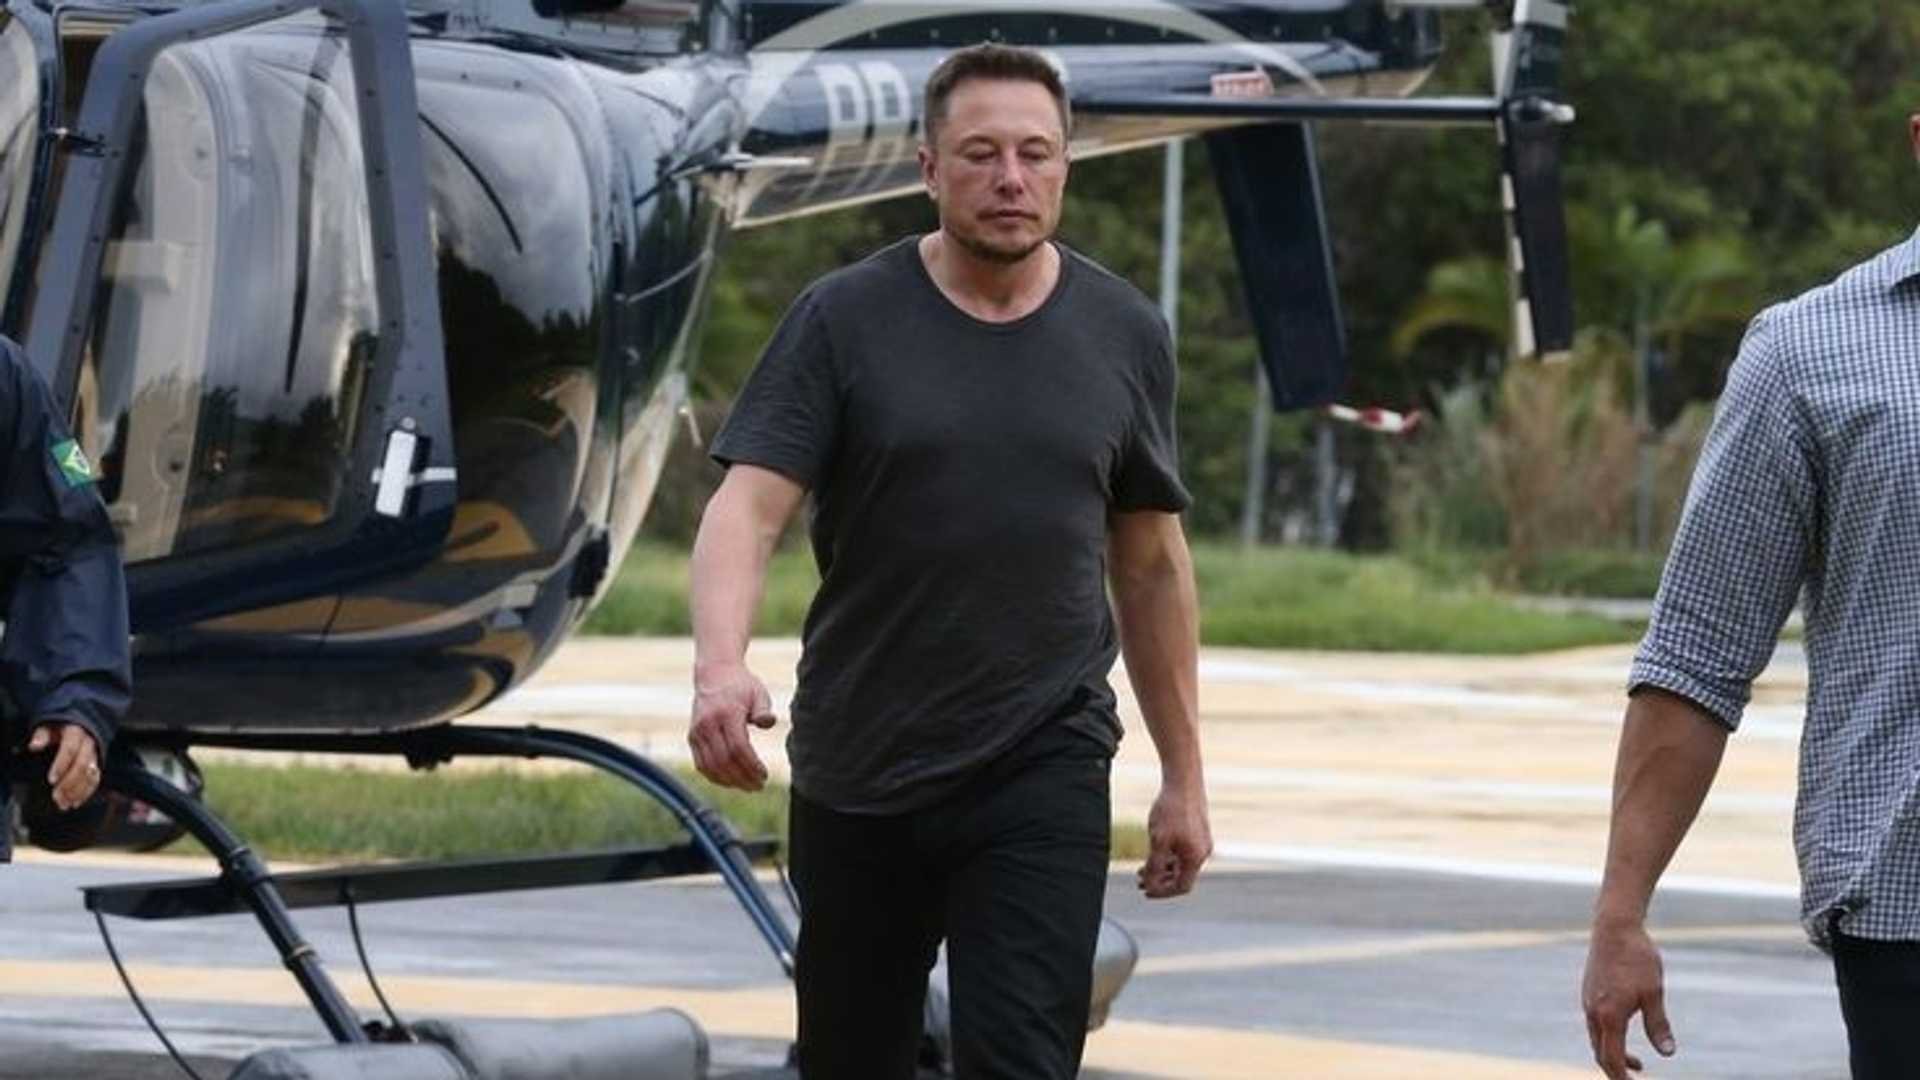  Cum a aterizat Elon Musk printre oalele cu chişleag de la Plugari, Iaşi. Mărturia plină de umor a unui profesor universitar